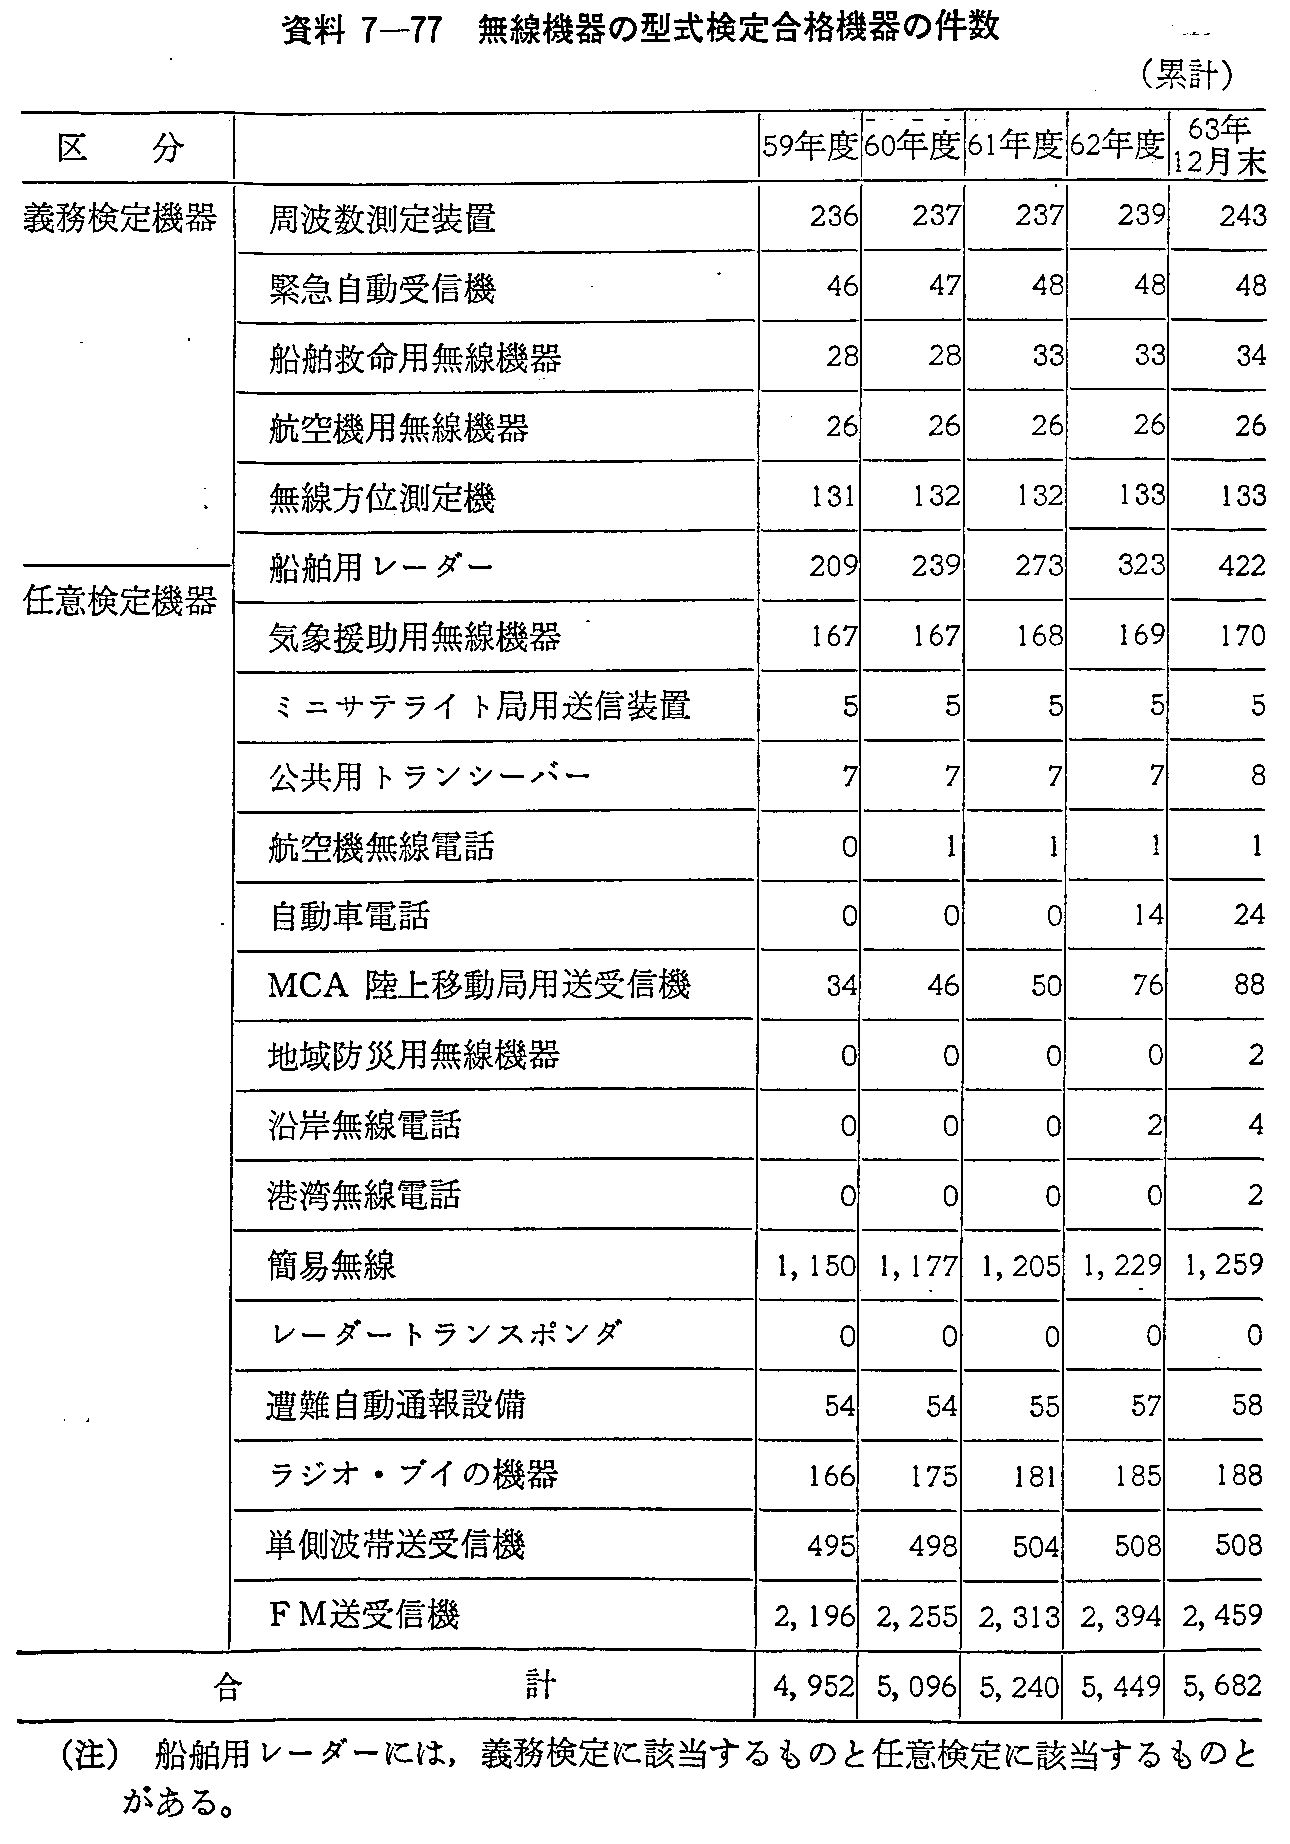 資料7-77 無線機器の型式検定合格機器の件数(累計)